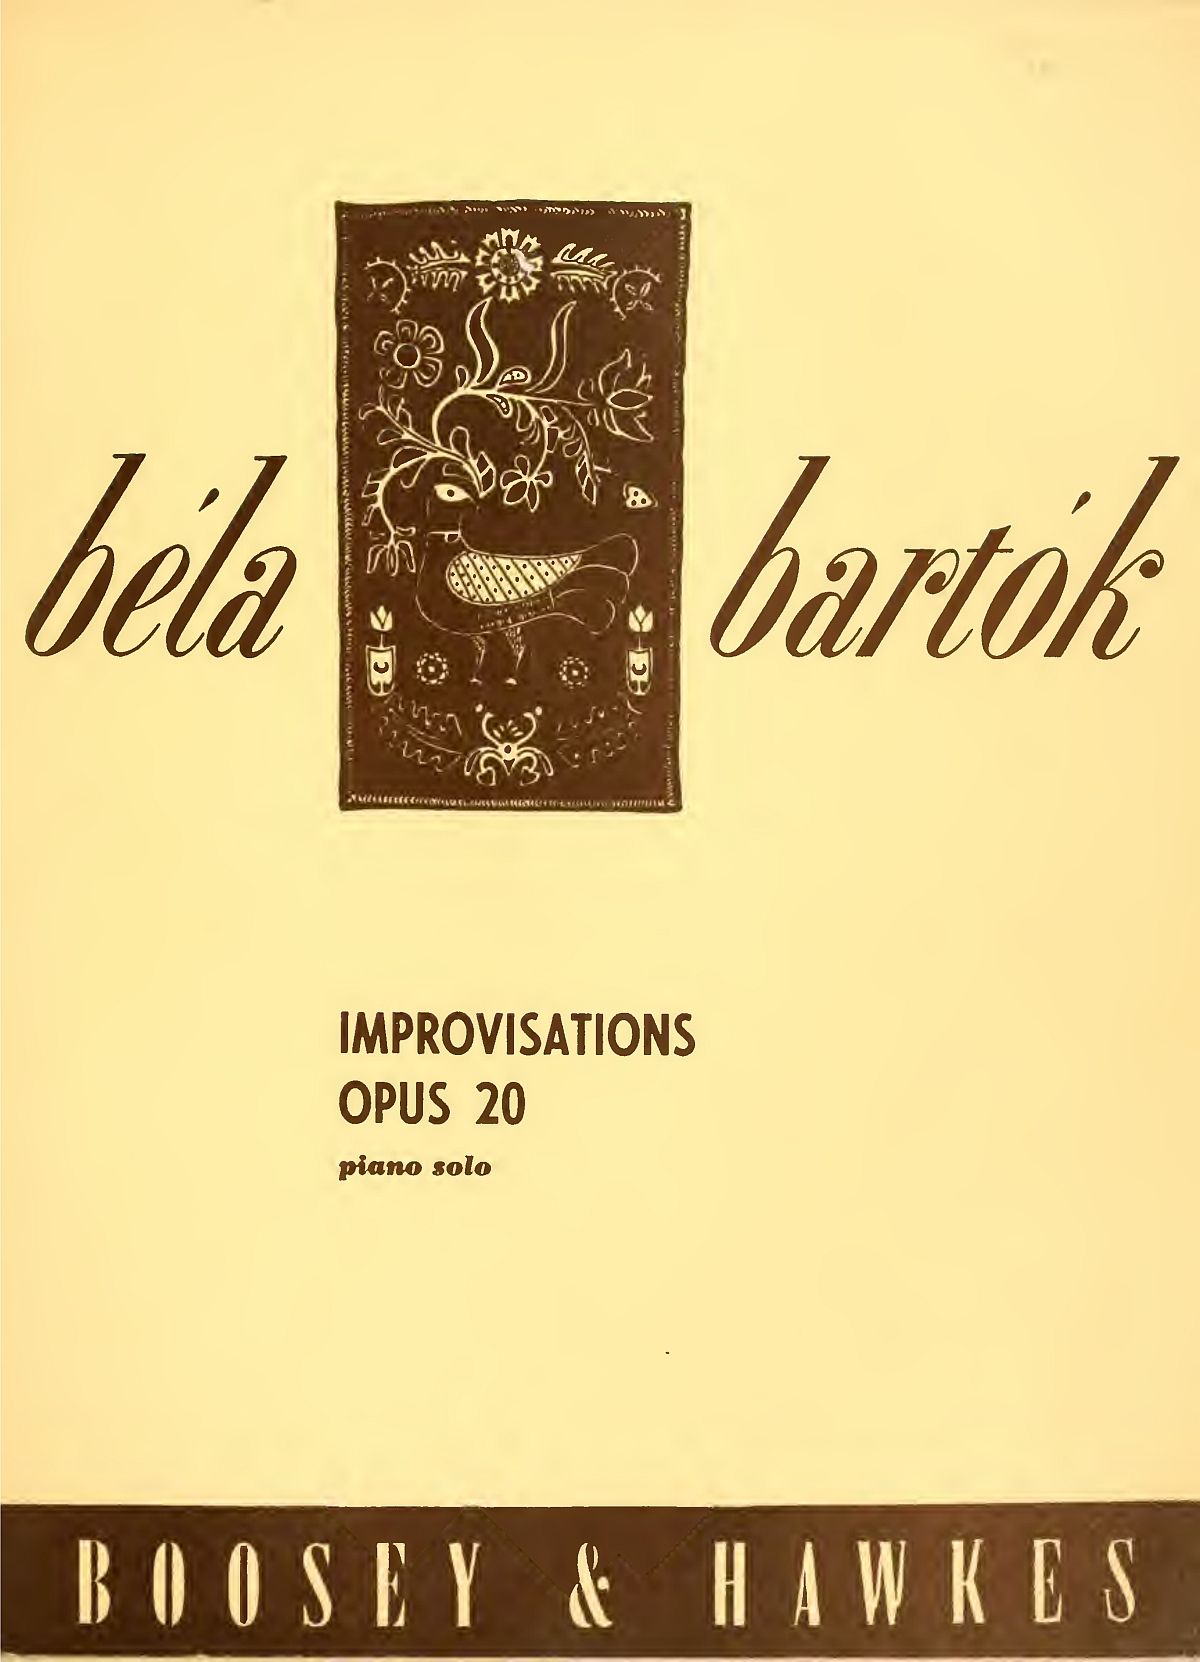 Bela BARTOK, Opus 20, page de couverture de la partition